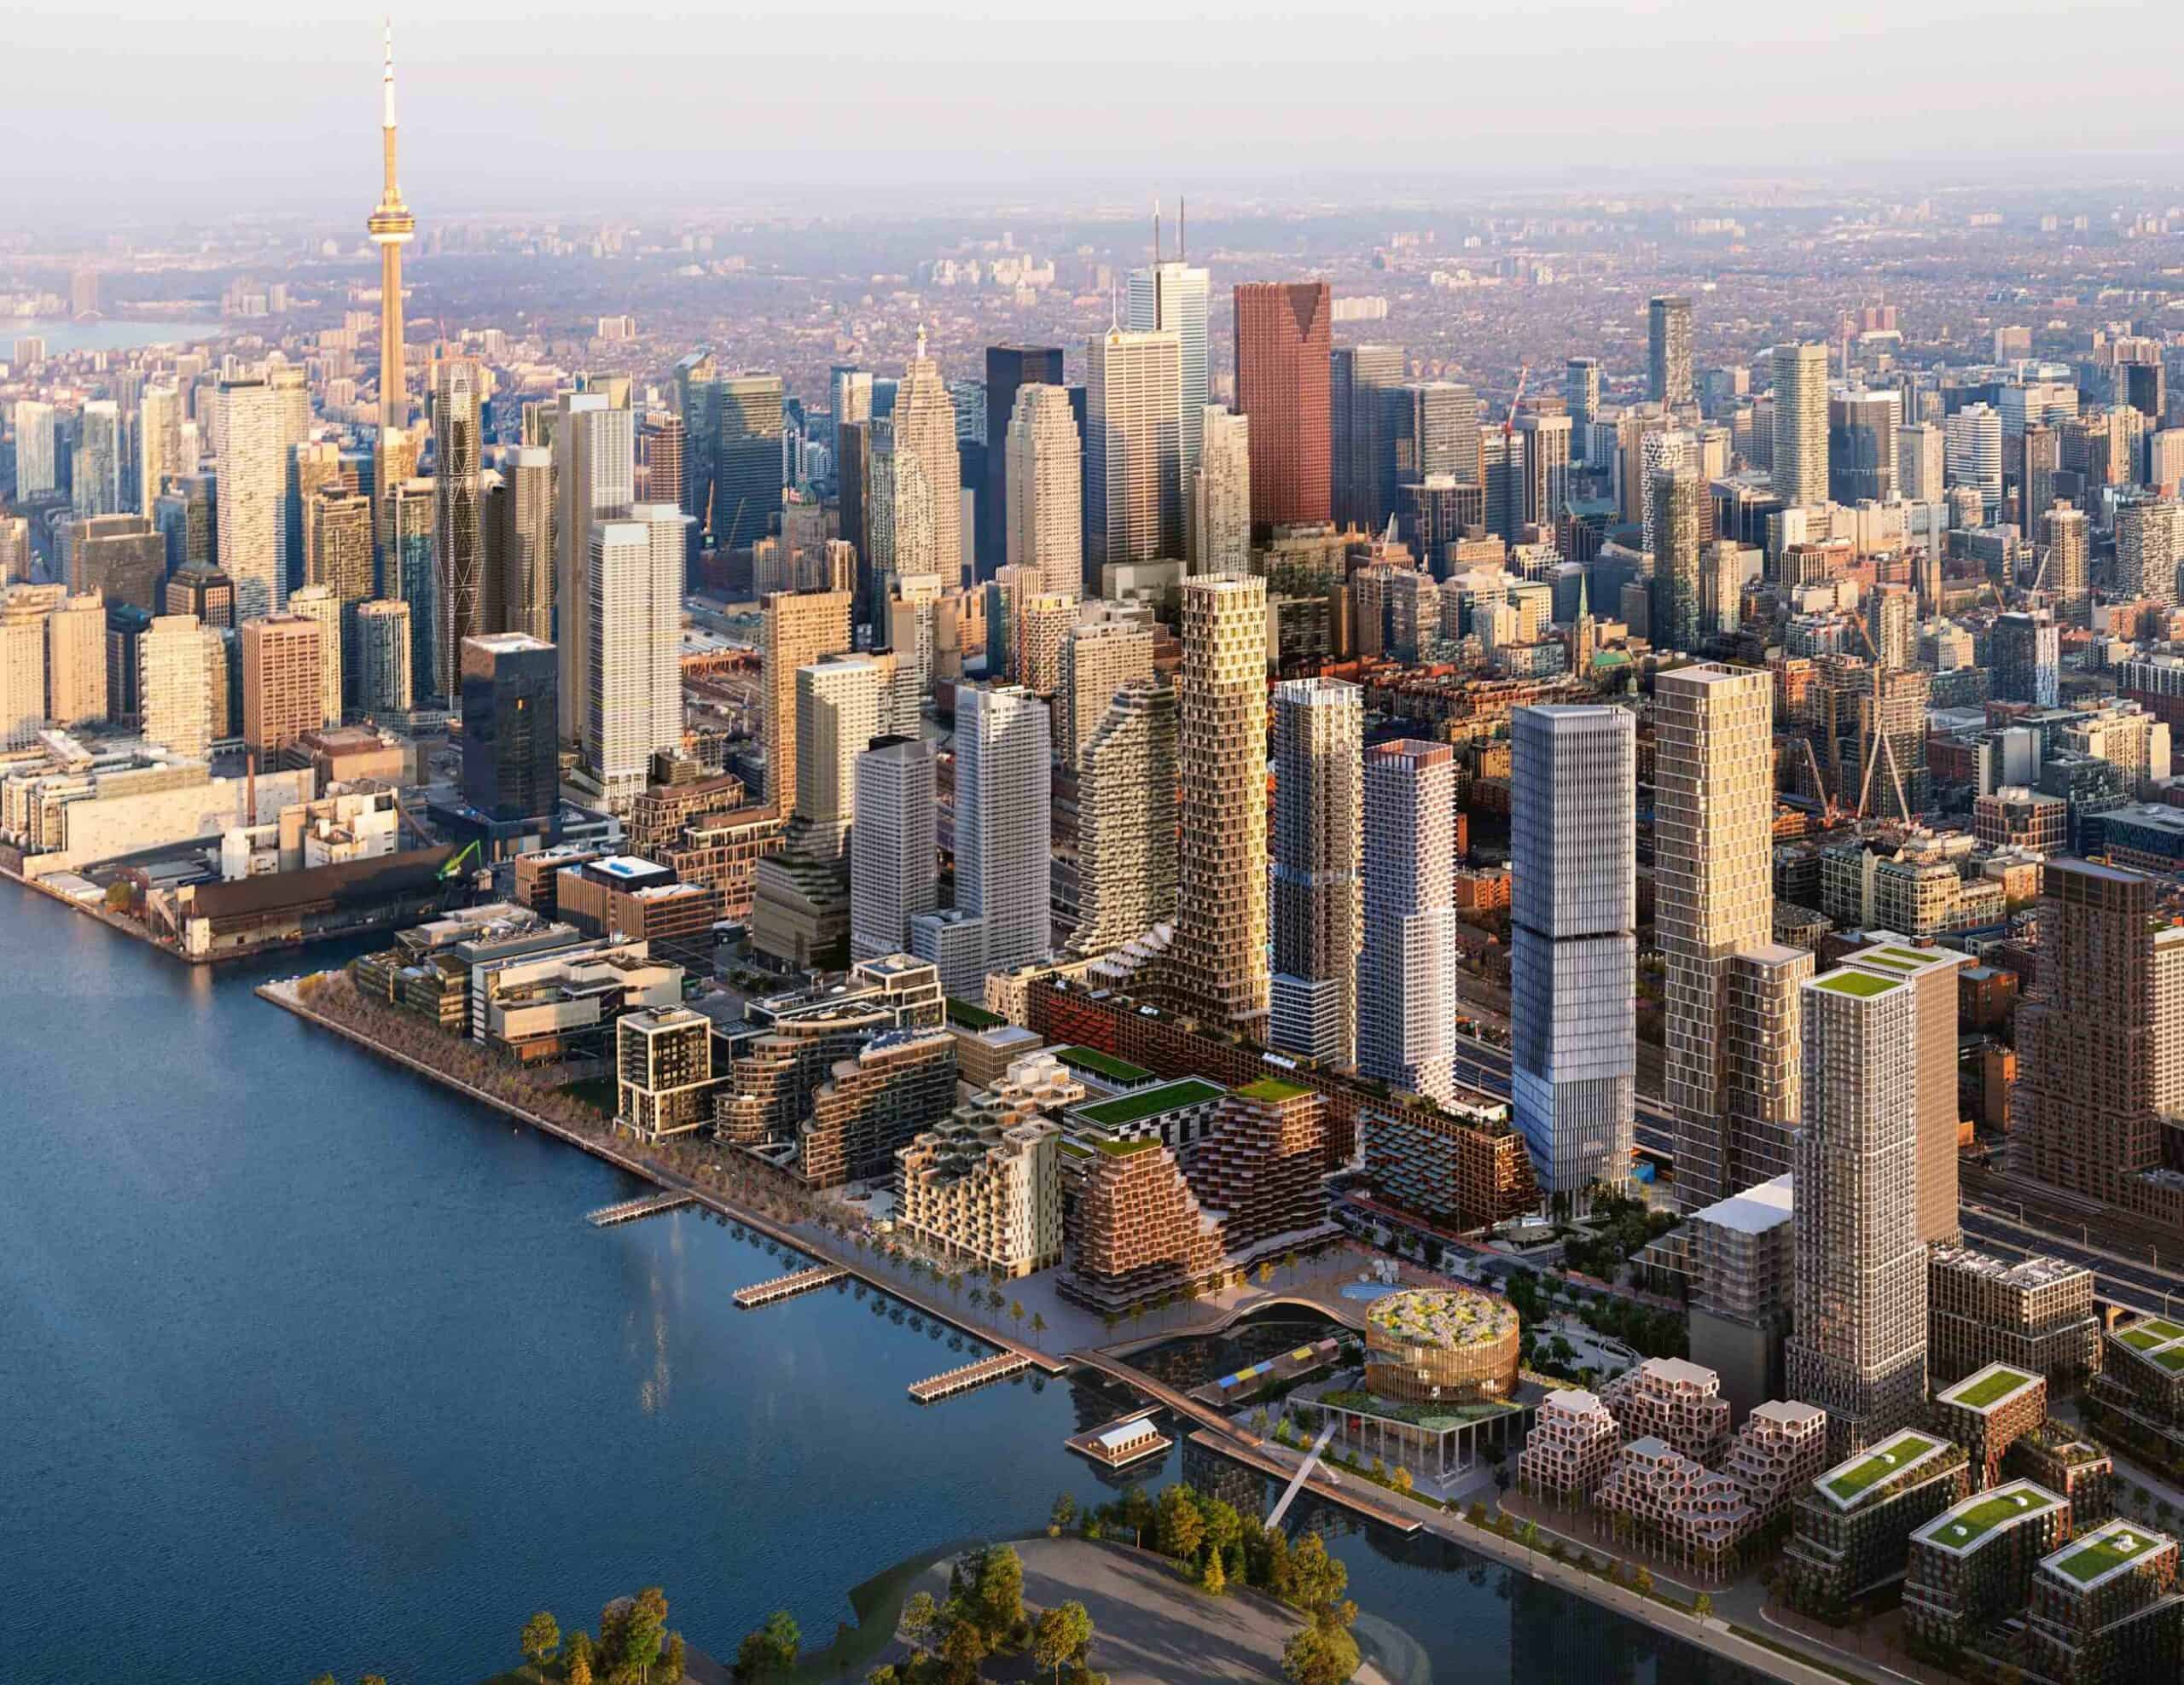 لماذا تنفر بعض المجتمعات من فكرة المدن الذكية؟ دراسة حالة في تورنتو